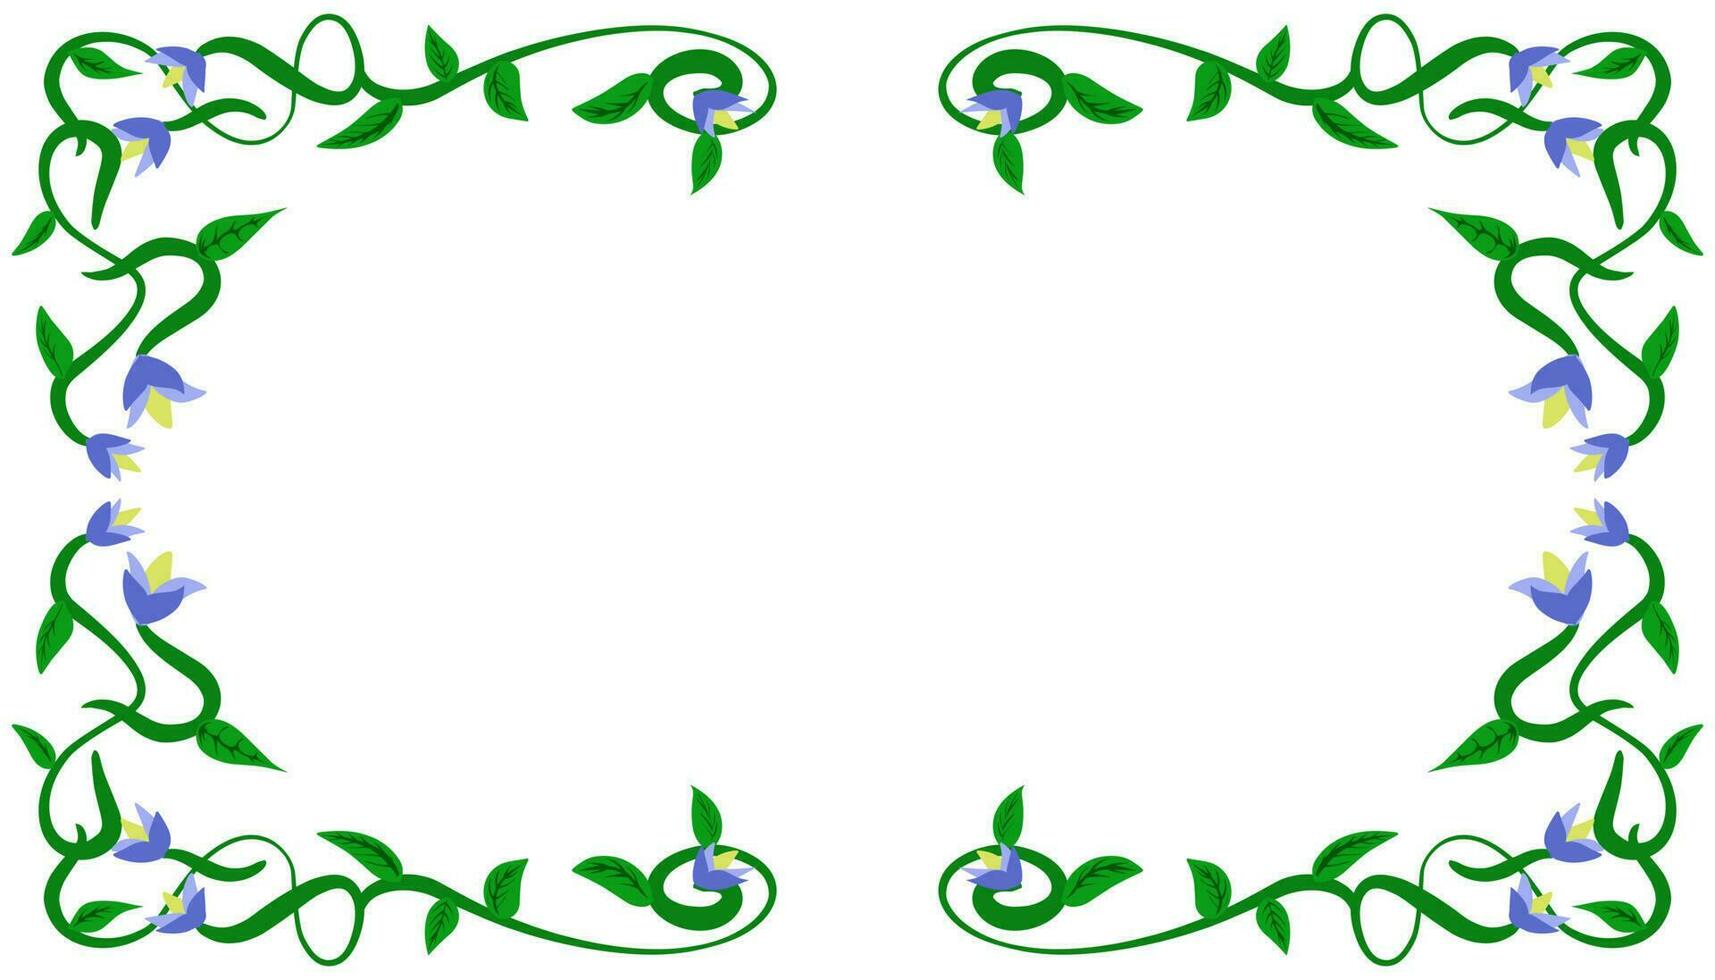 Background illustration of a green leaf twig frame motif vector